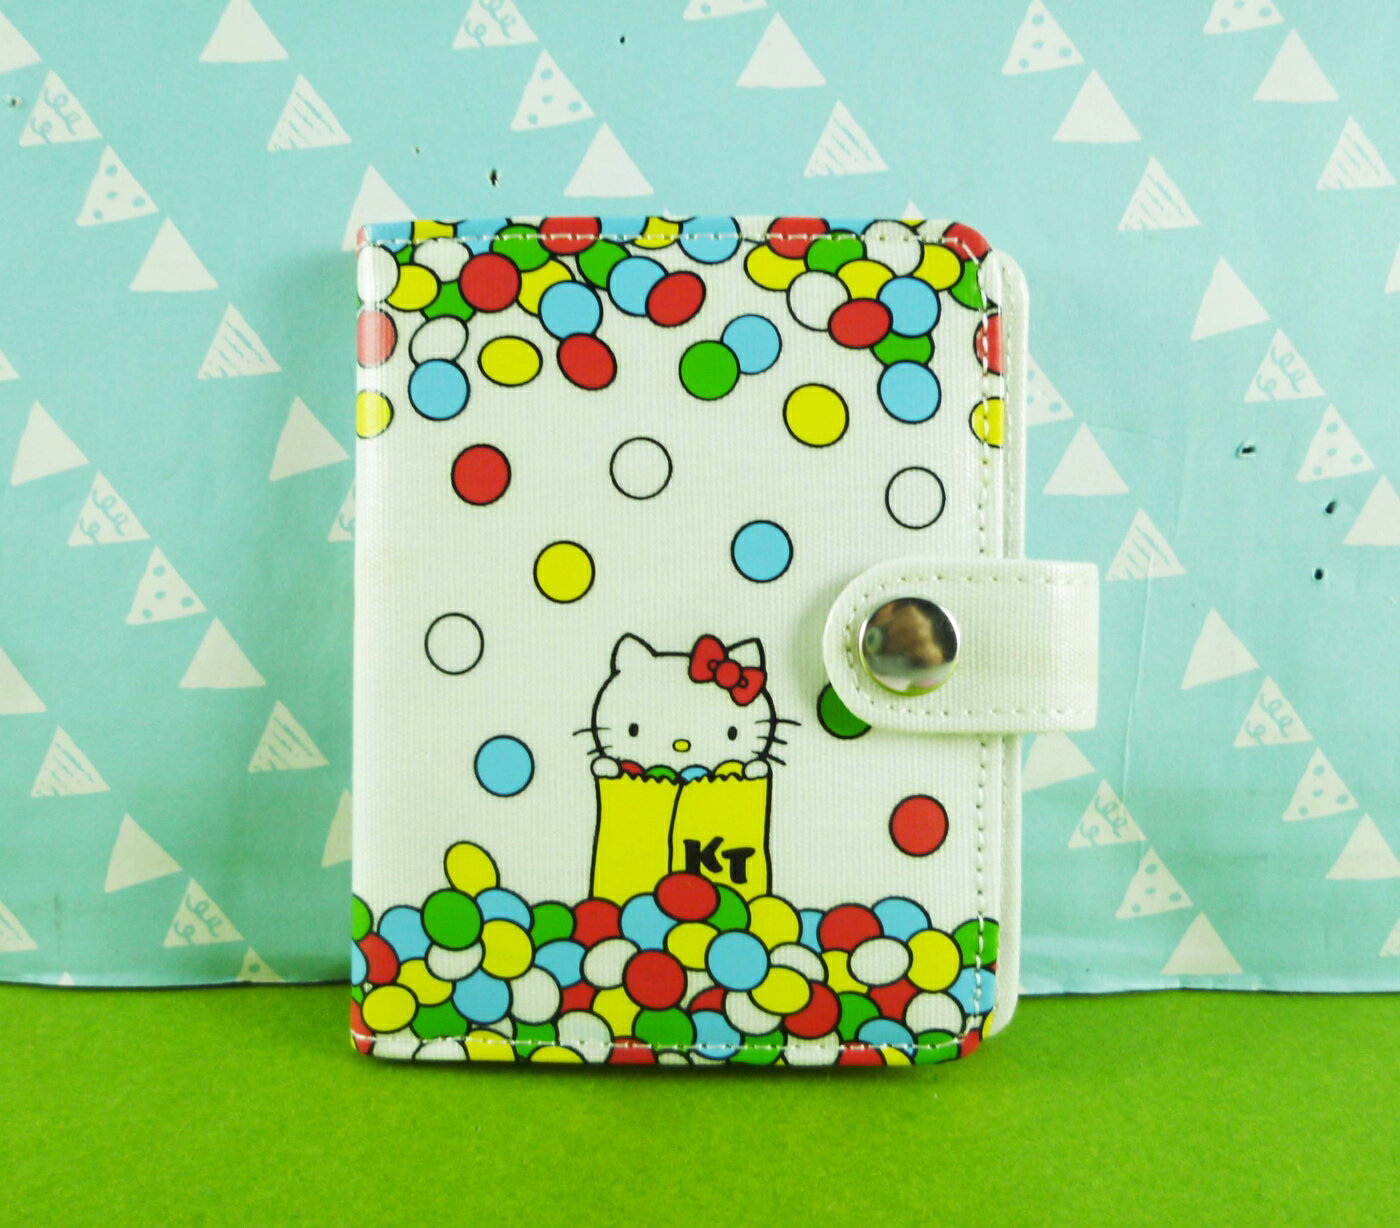 【震撼精品百貨】Hello Kitty 凱蒂貓 卡片本 汽球【共1款】 震撼日式精品百貨